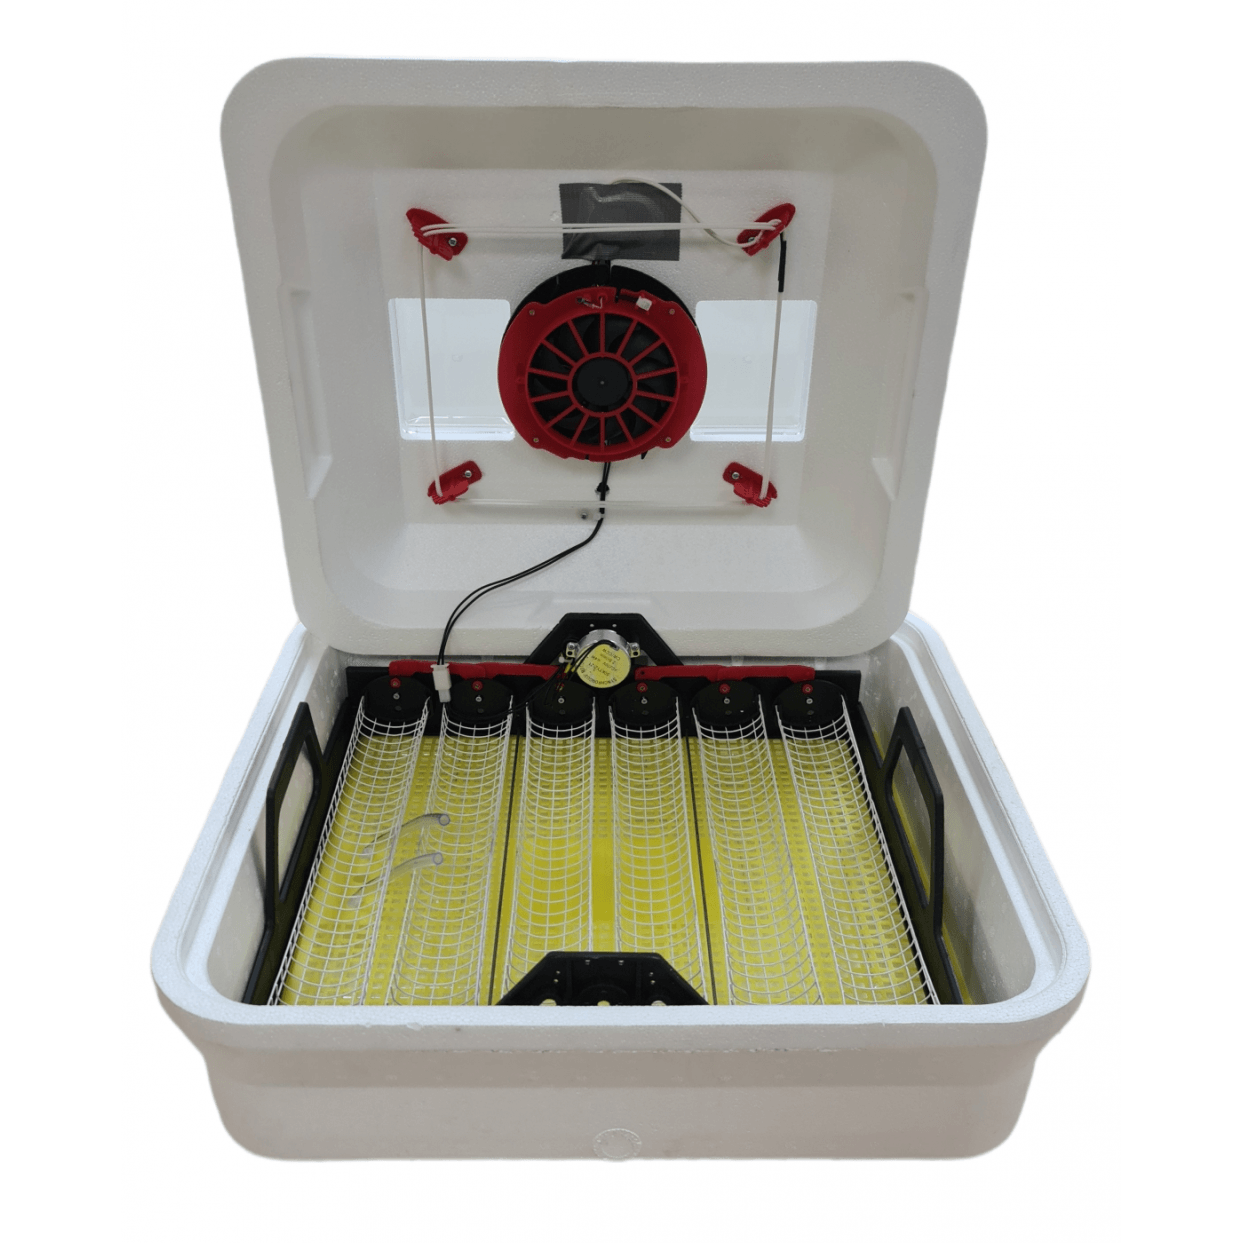 Incubator electric pentru oua ELEFANT E3, 50 W, 220 V, 30-40 C, 54 oua gaina, 156 oua prepelita, senzor umiditate, intoarcere automata - ZEP.RO - Ți-e la îndemână!